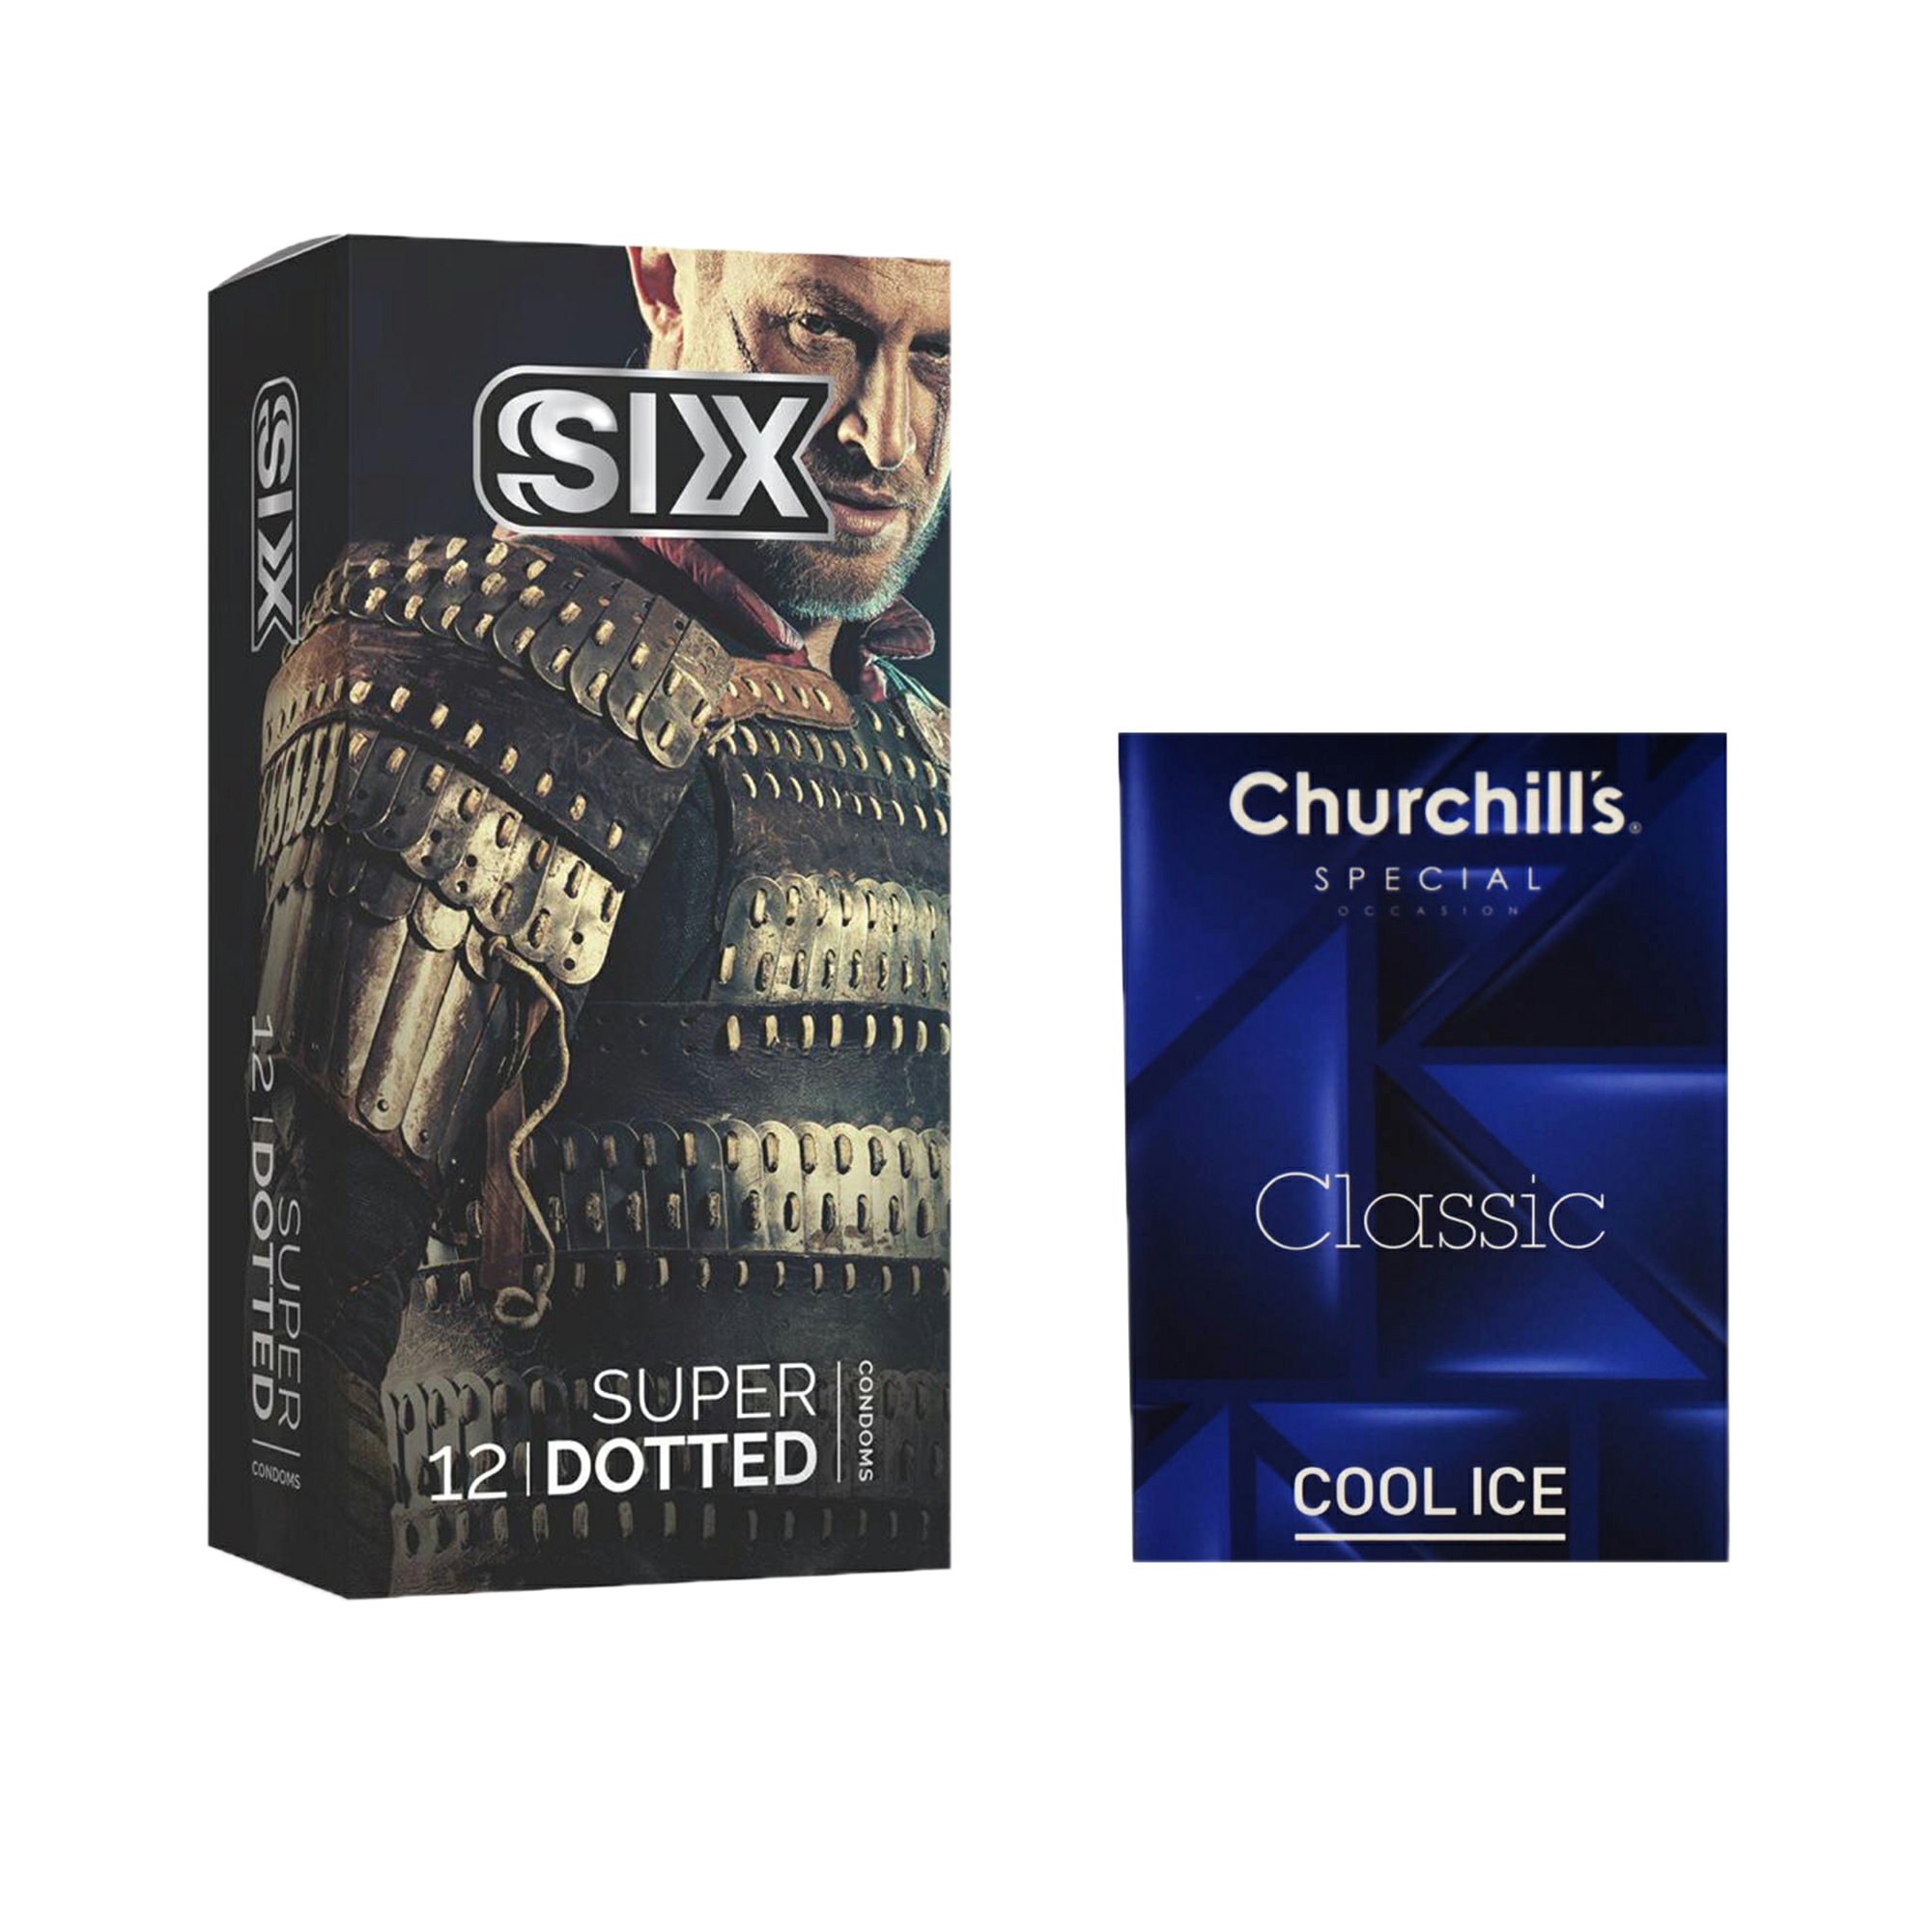 کاندوم سیکس مدل Super Dotted بسته 12 عددی به همراه کاندوم چرچیلز مدل Cool Ice بسته 3 عددی